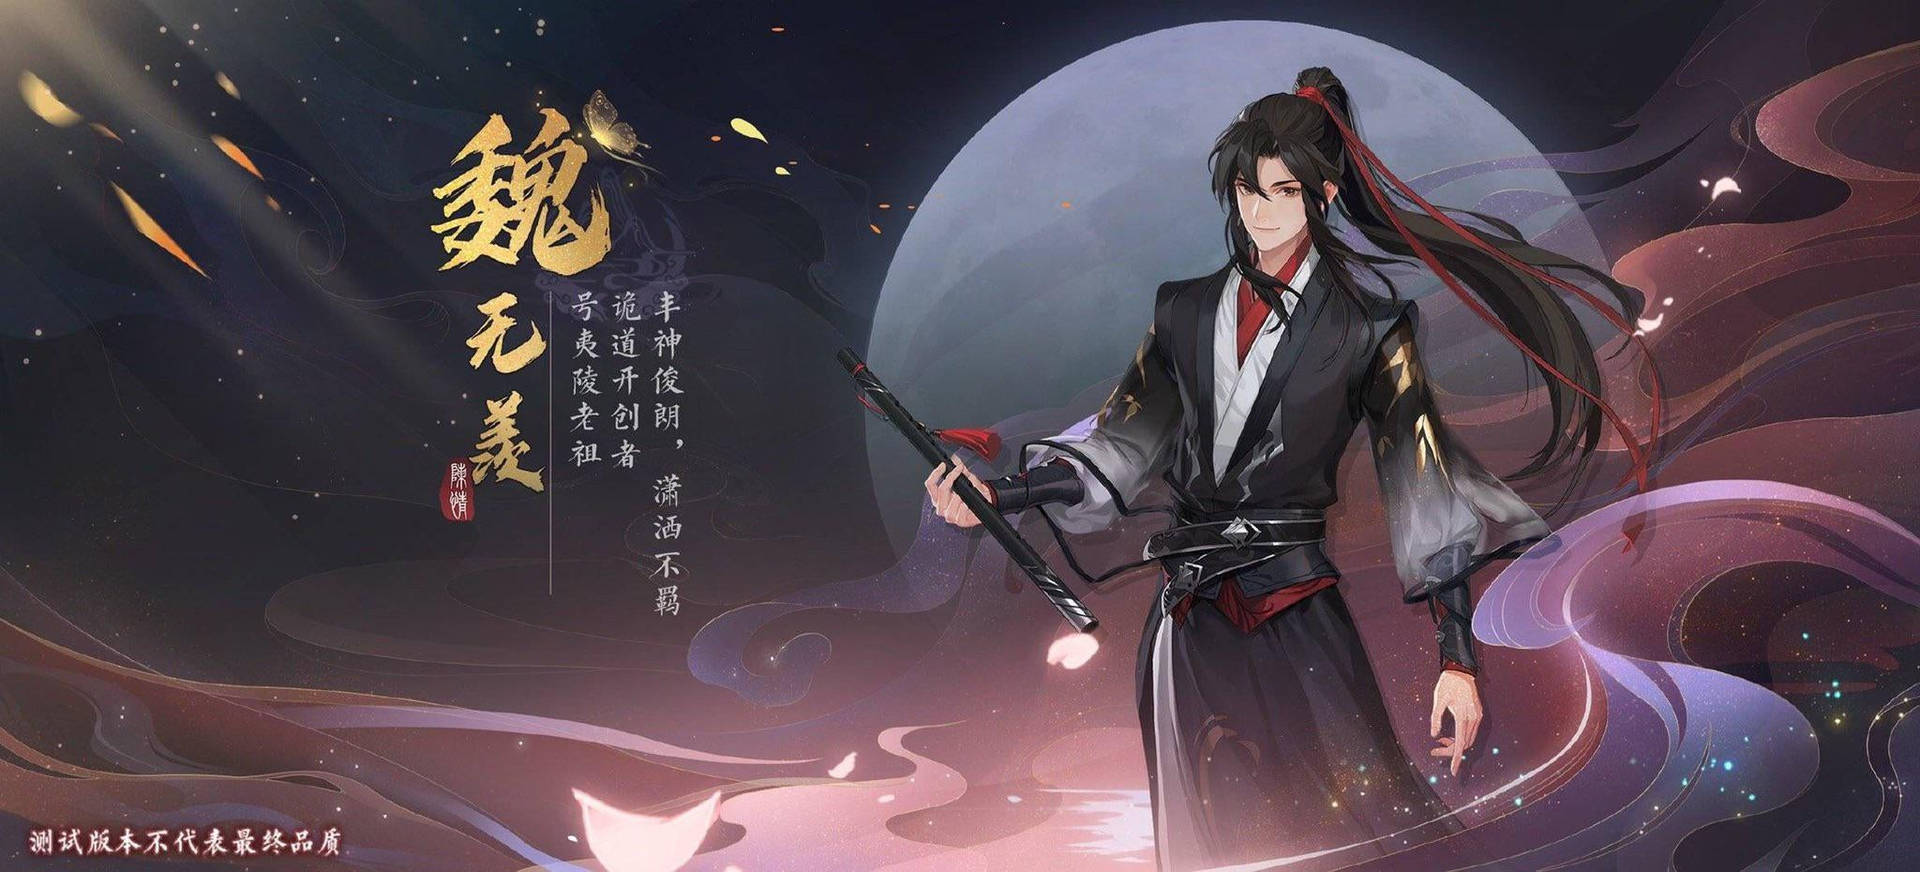 Mo Dao Zu Shi Wei Wuxian Game Poster